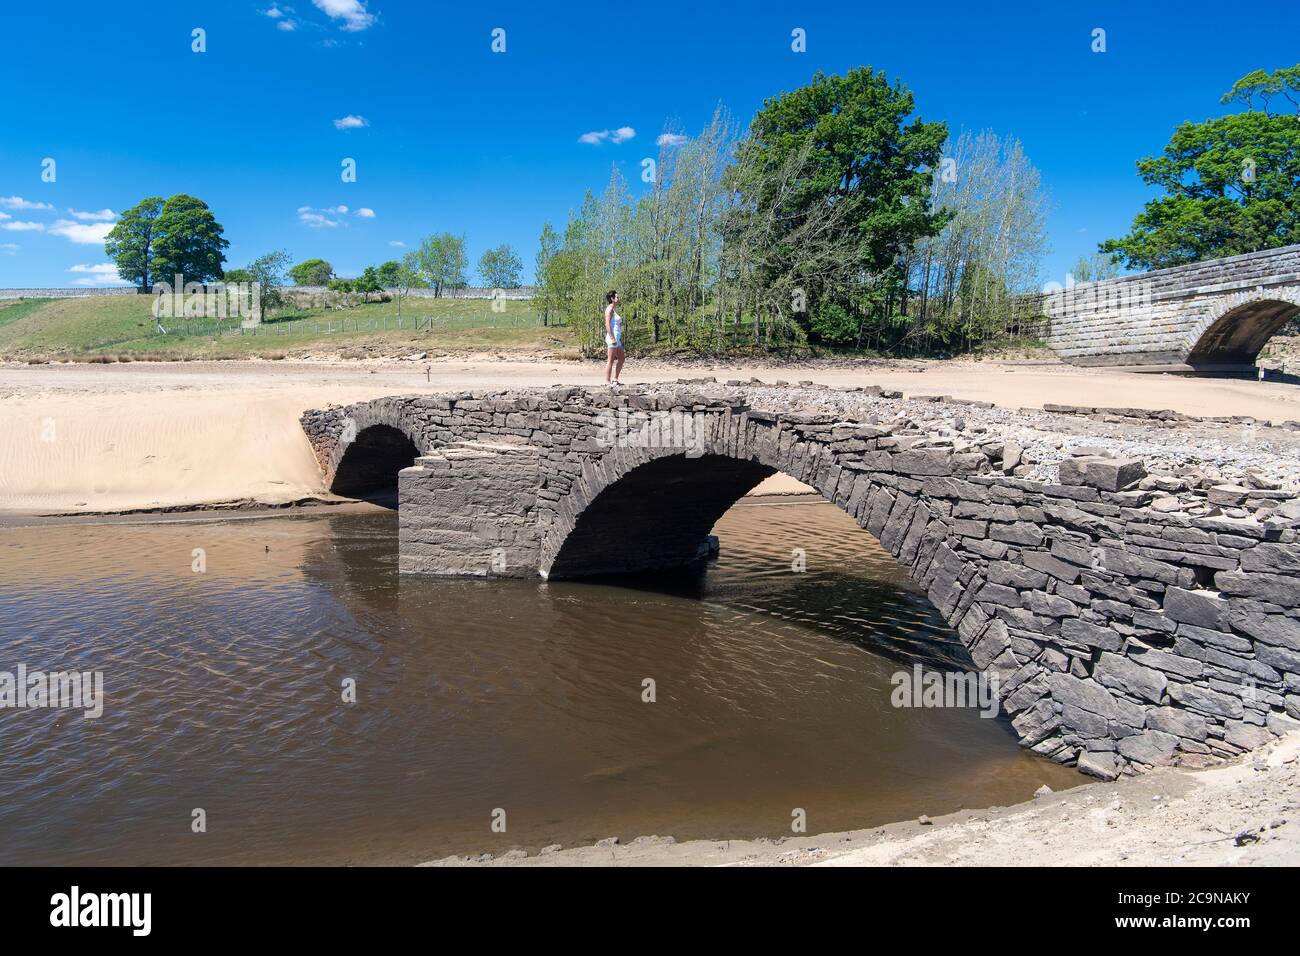 Middleton dans teesdale, Co. Durham. Un pont à cheval, normalement submergé par l'eau sur le réservoir de Grassholme, émerge intacte à mesure que les niveaux d'eau f Banque D'Images